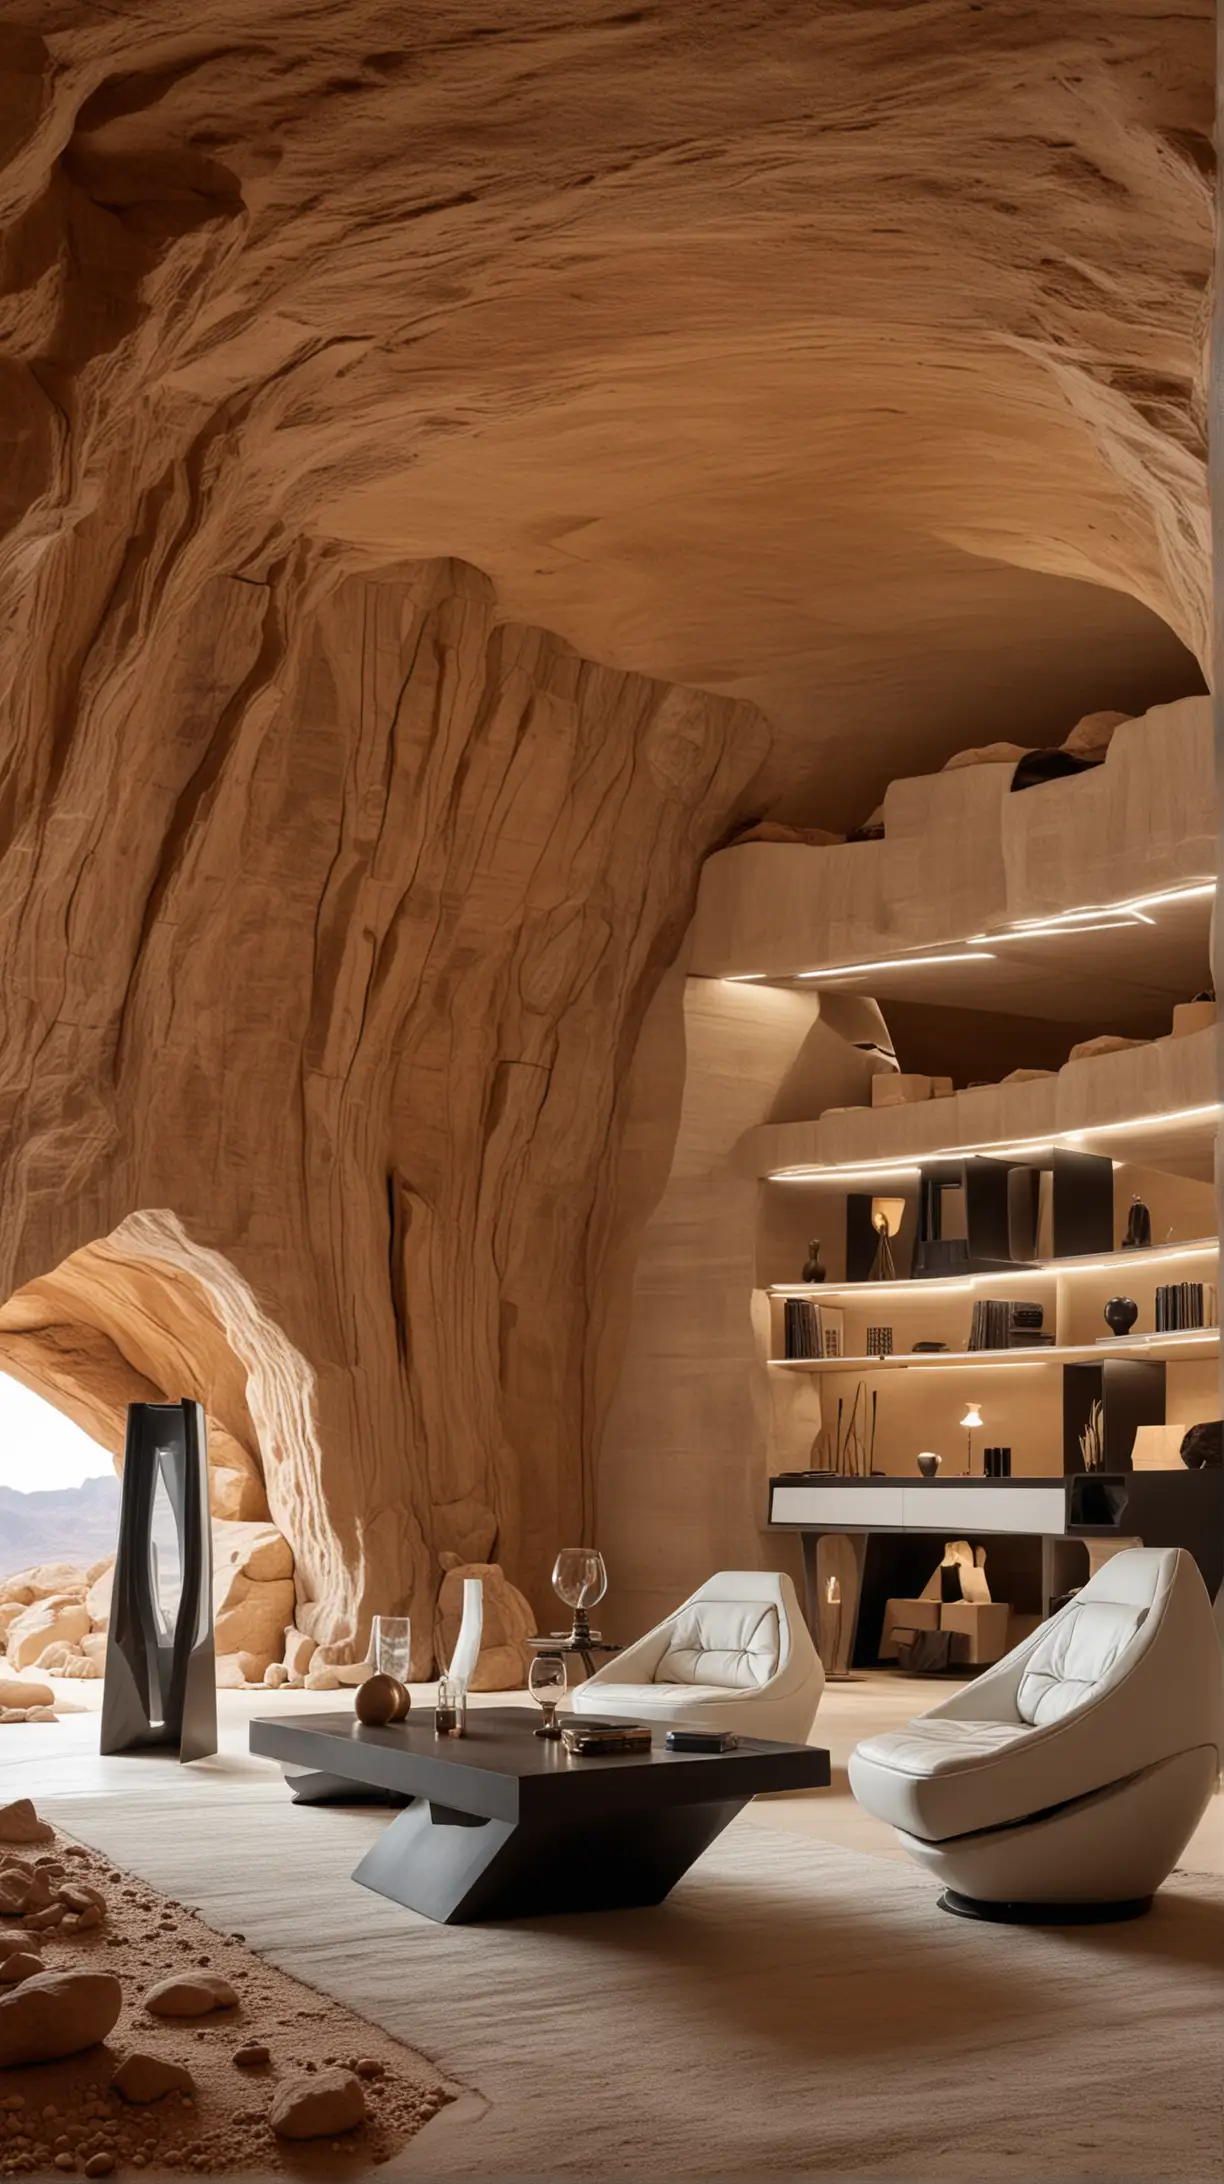 futuristischer Innenraum in einem Höhlengewölbe in der Wüste, hochmoderne Designermöbel